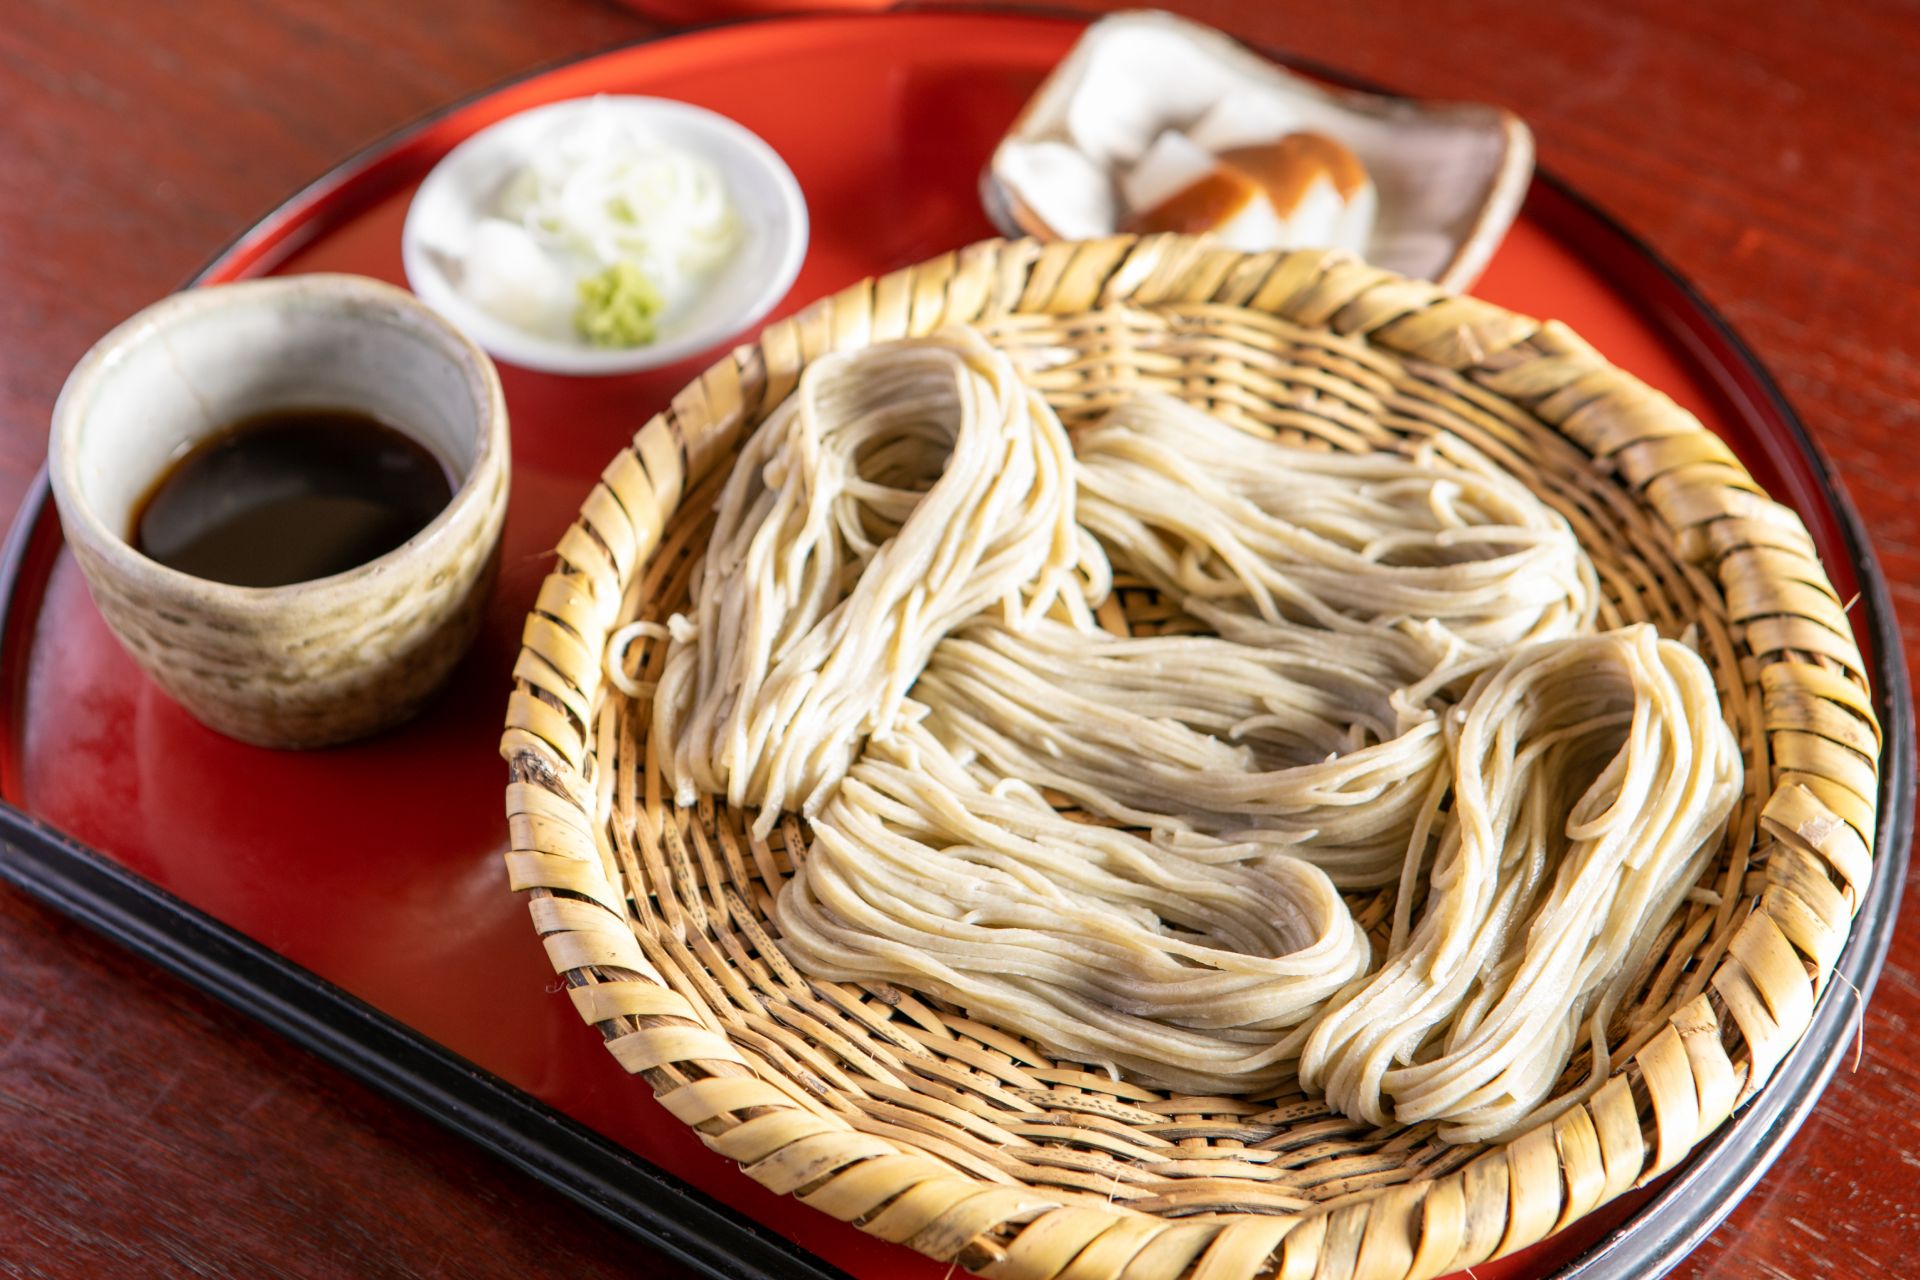 Yata-an使用店主培訓的信州和本山葵的優質蕎麥粉。